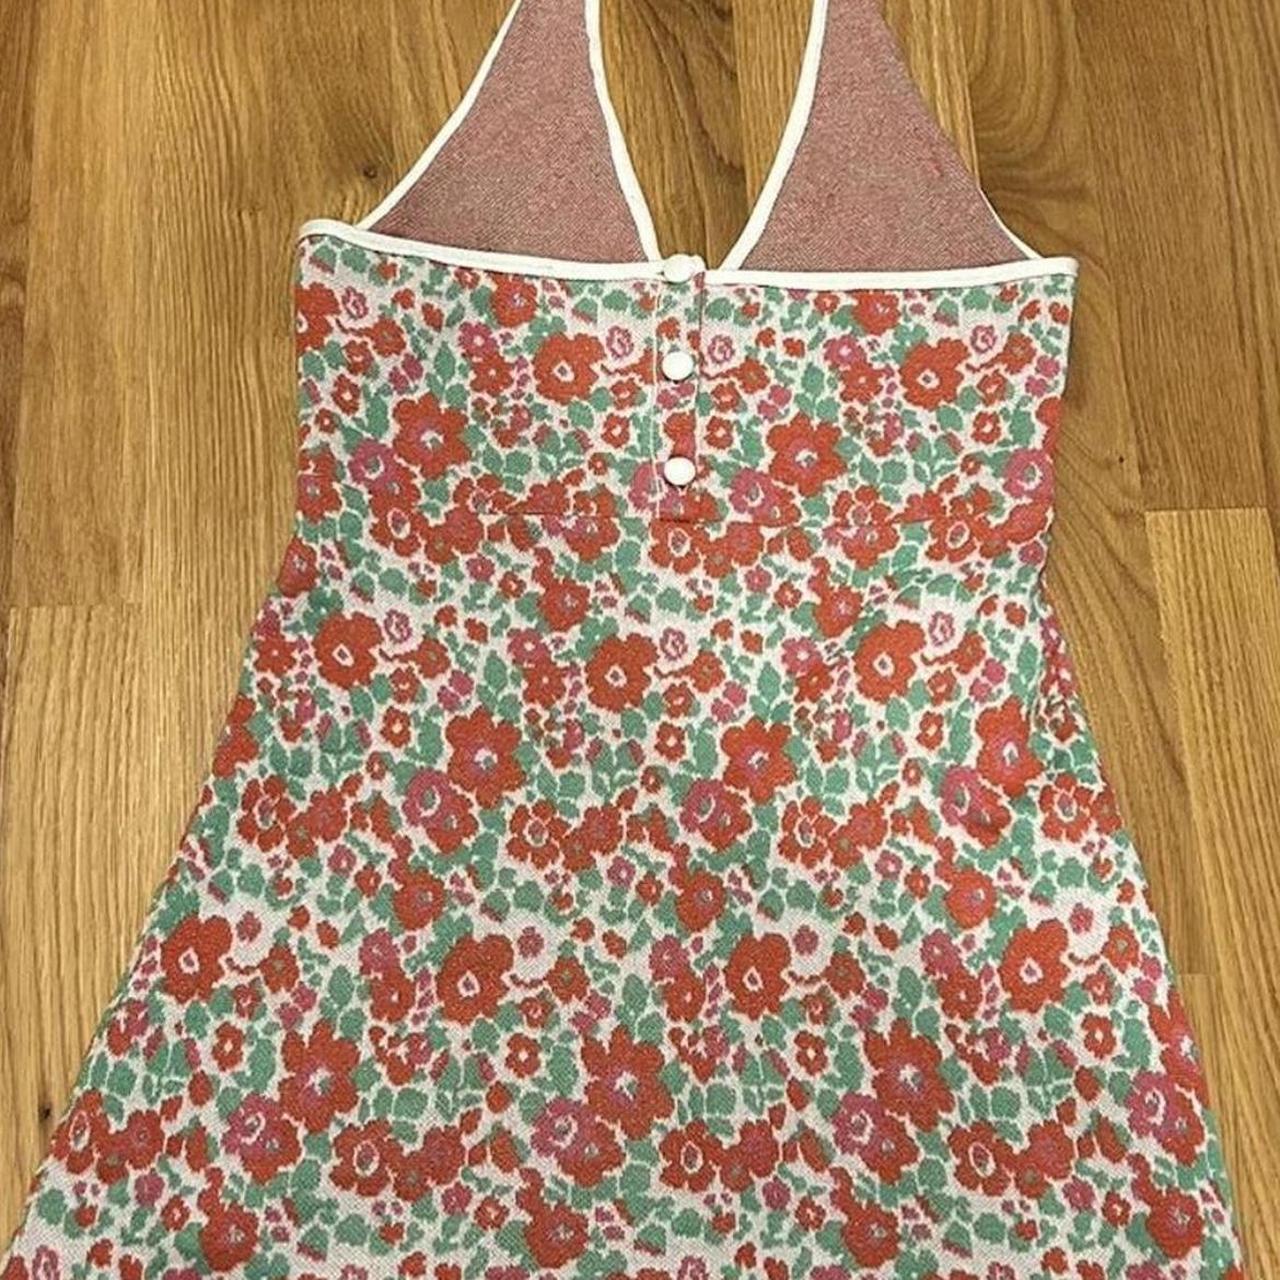 Zara Floral Knit Halter Top Dress! Size... - Depop